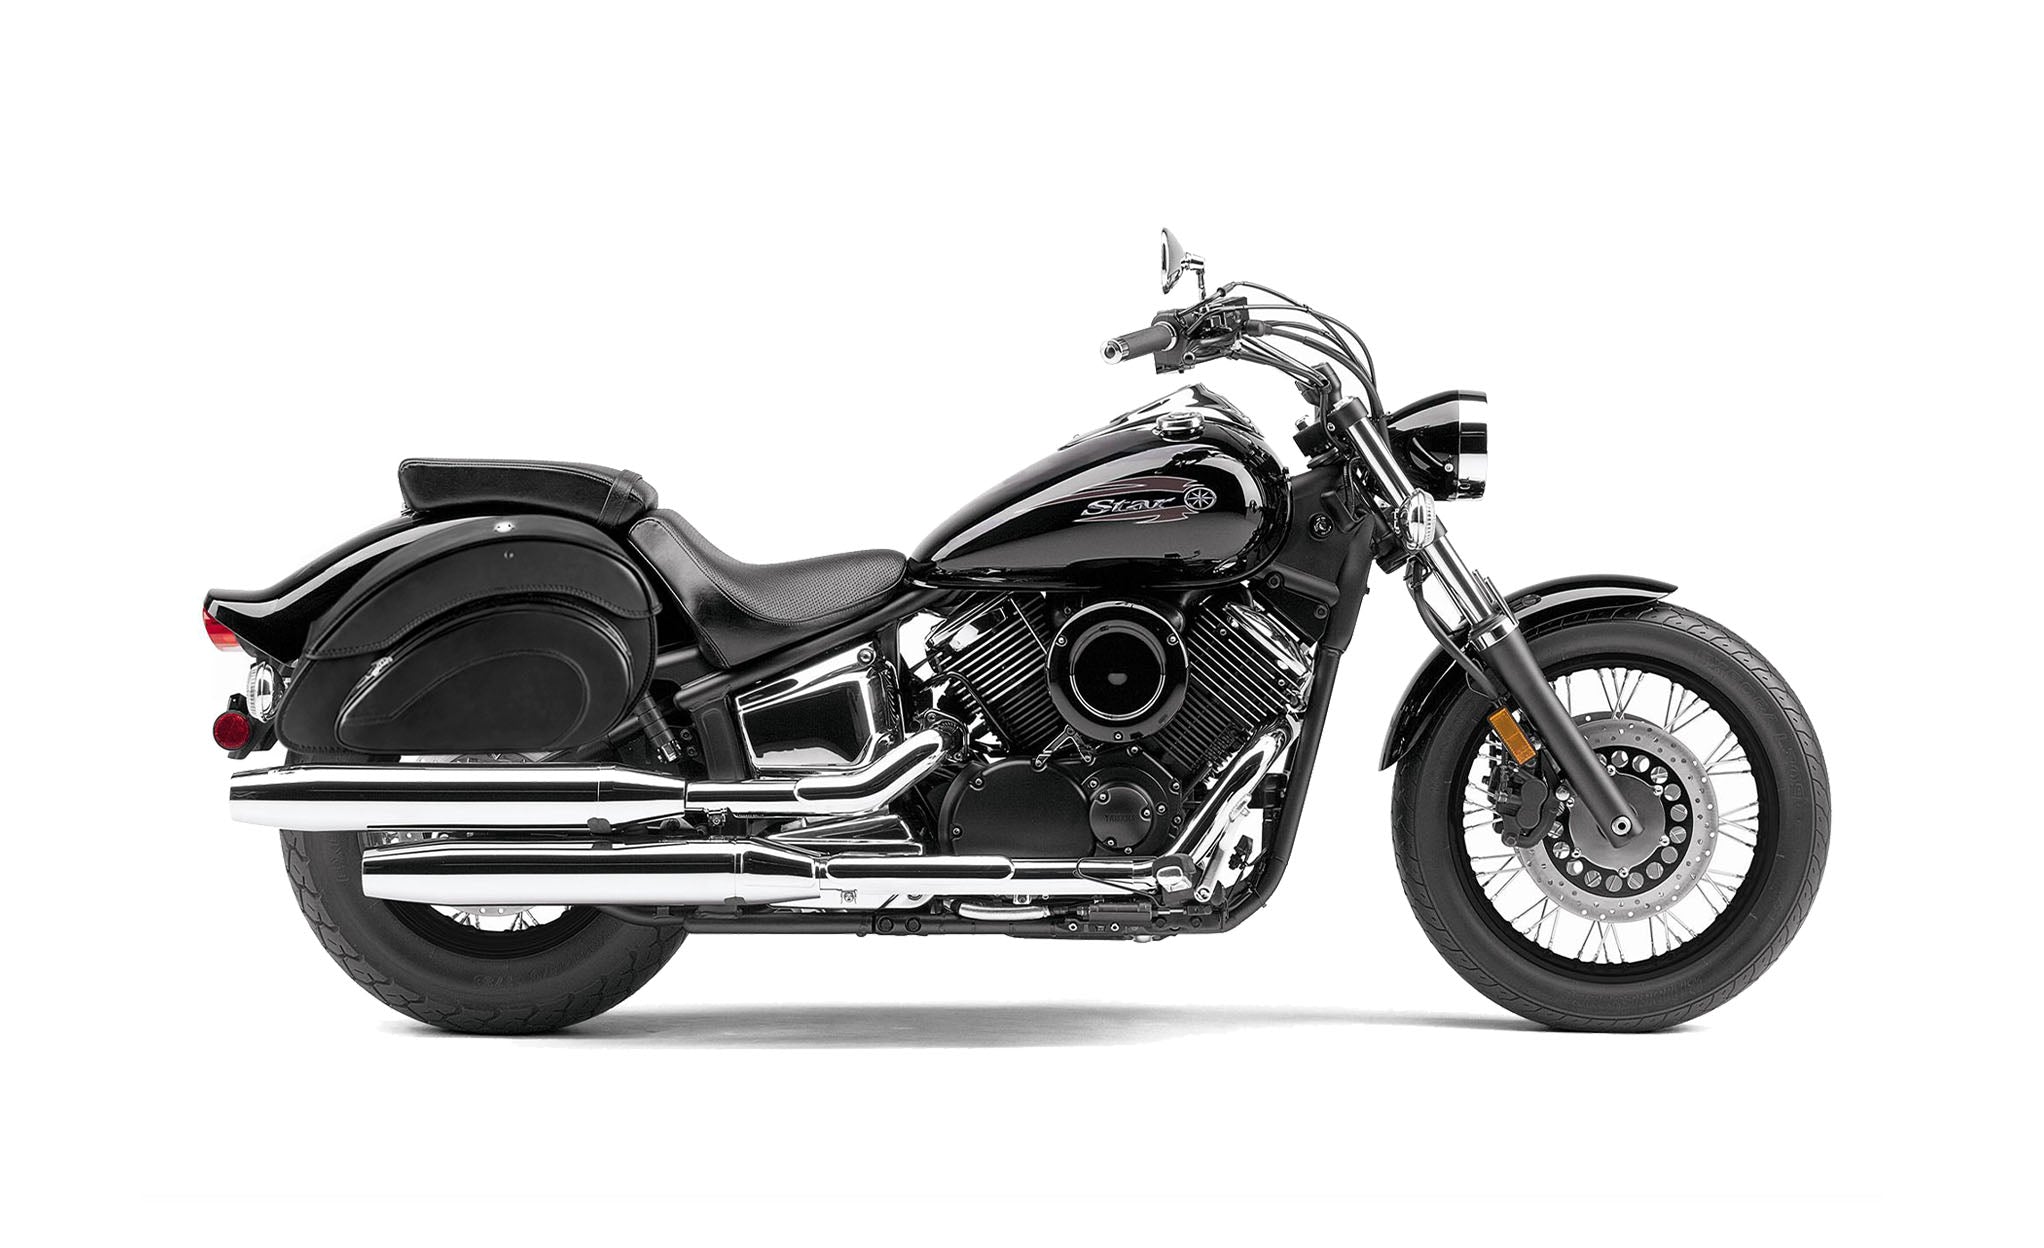 Viking Overlord Large Yamaha V Star 1100 Custom Xvs11T Leather Motorcycle Saddlebags on Bike Photo @expand